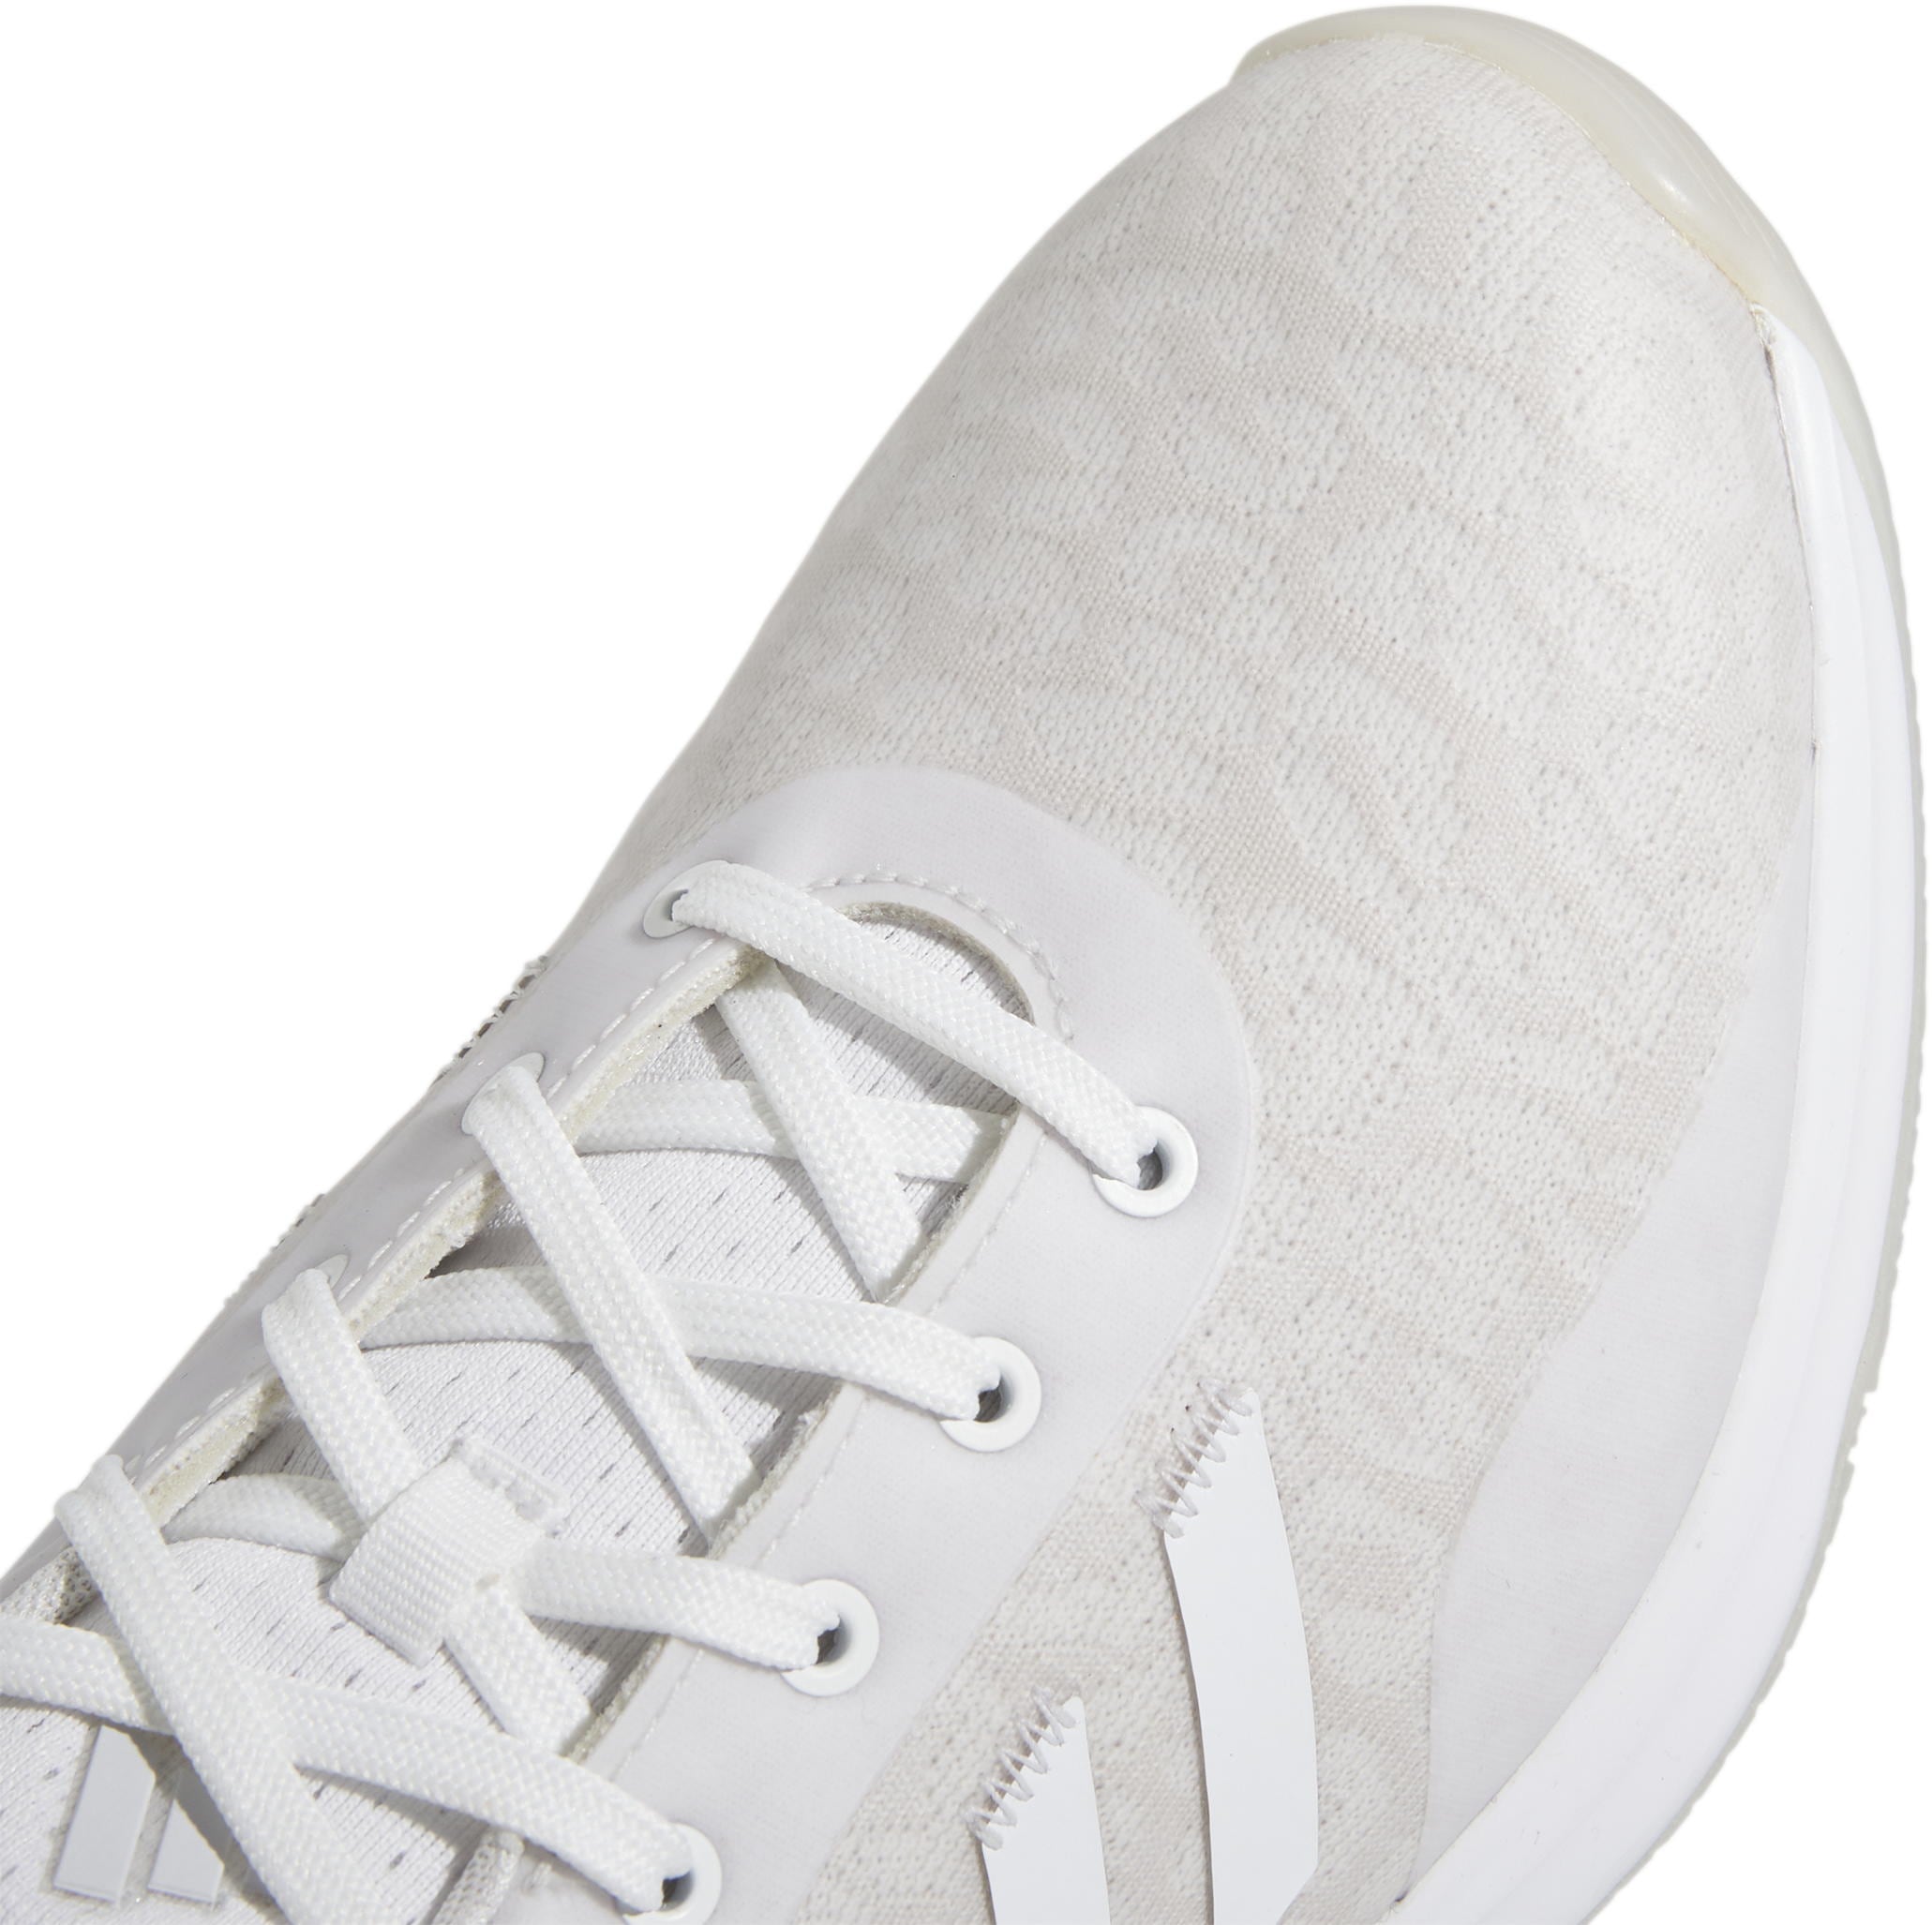 adidas S2G 23 Golfschuh, white/grey